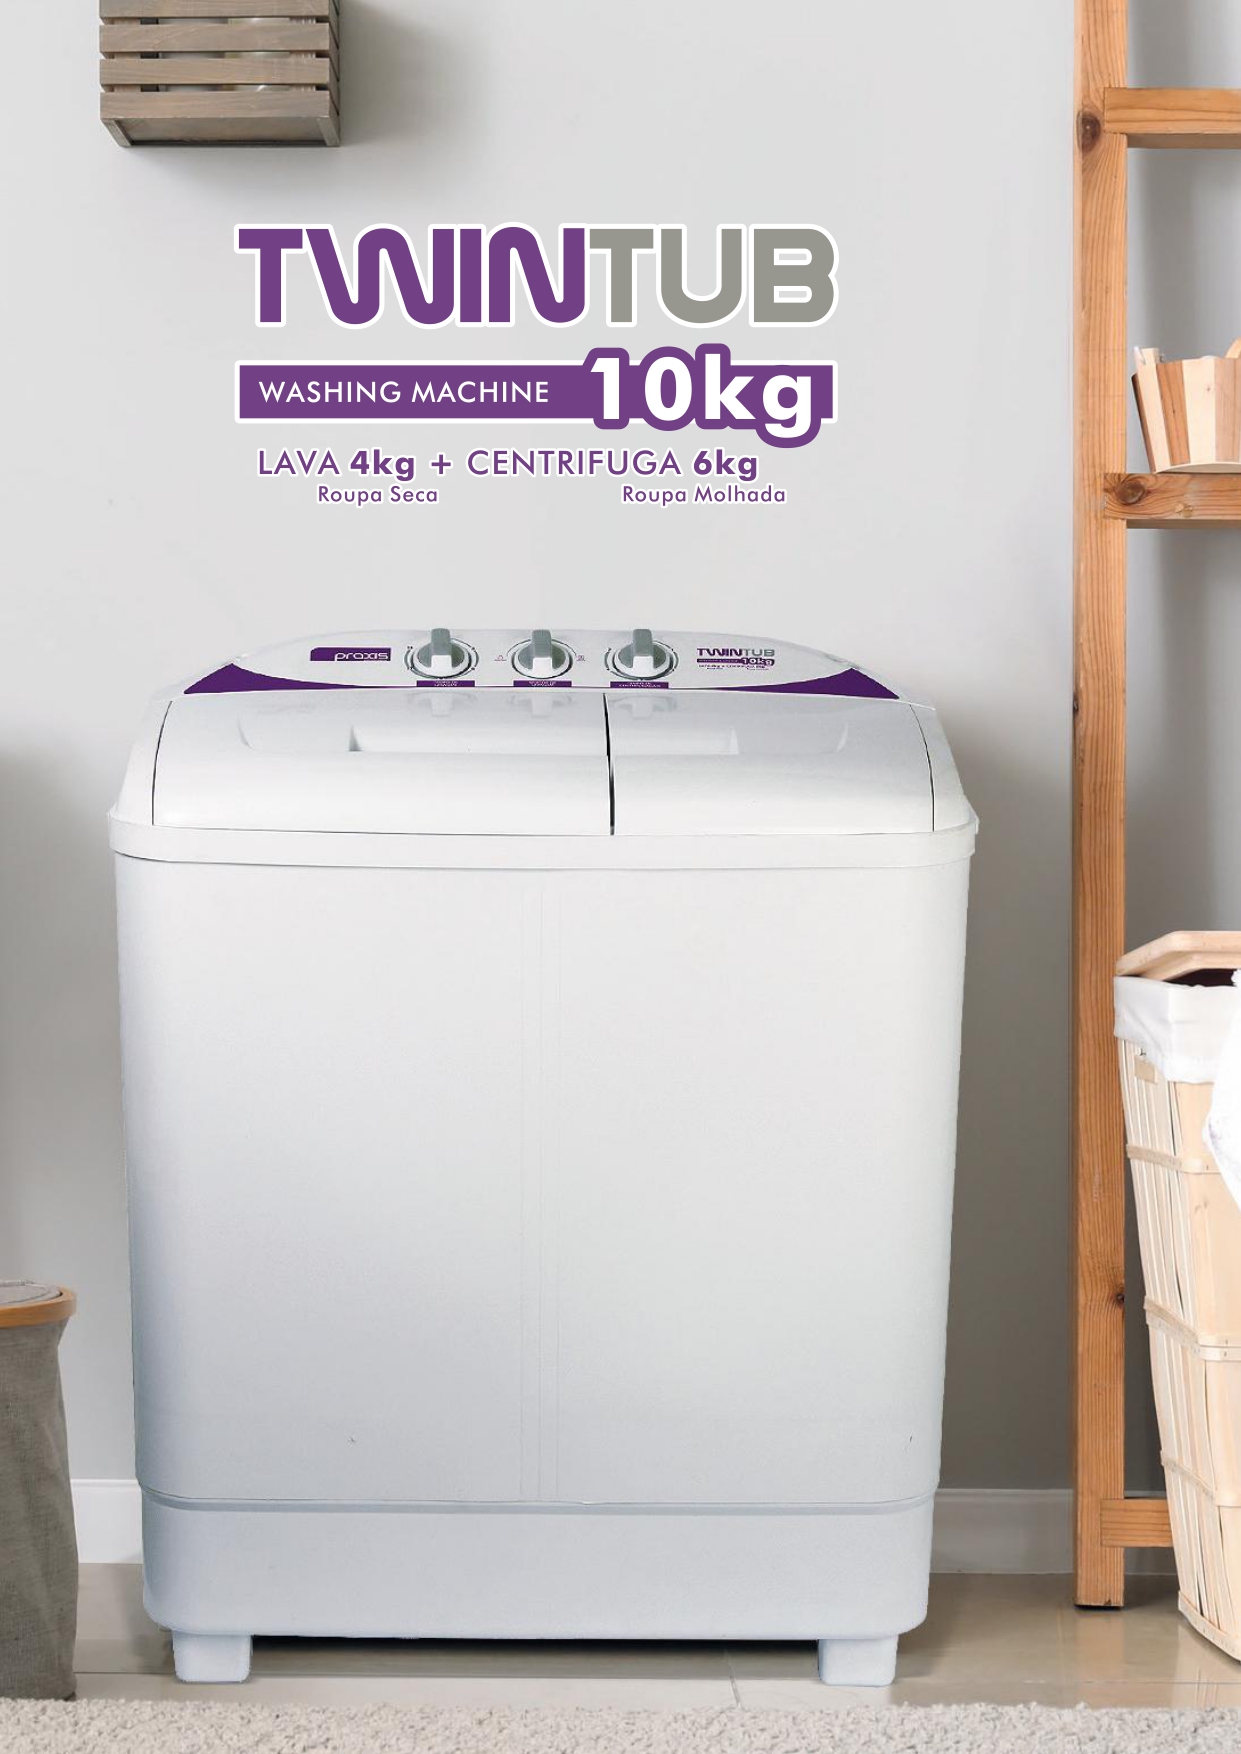 A TWINTUB é feita com tecnologia de ponta para oferecer um mundo de benefícios para você. Uma máquina de lavar moderna e versátil para se adaptar ao seu estilo, seja ele qual for.  Modelo do Produto: Máquina de Lavar Roupas Twin Tub  Capacidade: 10Kg Altura: 74 cm Largura: 93 cm Profundidade: 41 cm Marca: Praxis Eletrodomésticos  Itens Inclusos: Maquina de Lavar, uma mangueira de entrada, um manual, um guia de autorizadas e uma tampa de pressão da centrifuga. Garantia: 1 ano Descrição: Essa Lavadora é a única que lava e centrifuga simultaneamente. Uma maravilha da Praxis para sua casa. A Twin Tub é feita com tecnologia de ponta para oferecer um mundo de benefícios para você. Uma máquina de lavar moderna e versátil para se adaptar ao seu estilo, seja ele qual for. Possui dois compartimentos, sendo um para lavagem, outro para centrifugação que podem funcionar separados ou simultaneamente. Ela lava até 4 kg e centrifuga até 6 kg. Possui painel mecânico e abertura superior, seu ciclo de lavagem tem 36 minutos de ciclo básico, porém é possível personalizar a lavagem de acordo com o tipo, quantidade de roupas e hábito do consumidor. É possível retirar algumas roupas, passar para a centrífuga e, enquanto parte das roupas é centrifugada, pode-se adicionar mais roupas no compartimento de lavagem, otimizando o tempo e aproveitando a água e o sabão. O sistema de lavagem é através de turbilhonamento com inversão da rotação do batedor, o que proporciona maior contato da roupa com o sabão, tornando a lavagem muito mais eficiente. Tecnologia inovadora, feita para o consumidor moderno, e permite personalização da lavagem. Projetada para a máxima eficiência, 26% mais eficiente que a média do mercado, segundo o Inmetro. Com ciclo menor que reduz o consumo de água, sabão e energia. Nota A no Procel. De acordo com as novas normas brasileiras para plugs e tomadas elétricas; Design elegante e atraente. Perfeita para pequenos espaços. Seletor que permite escolher entre roupas normais e delicadas. Alças que facilitam o transporte. Função drenar: permite o escoamento da água quando o consumidor desejar. Embalagem totalmente biodegradável e fácil de retirar. Produzidas com tecnologia de ponta, testadas uma a uma.